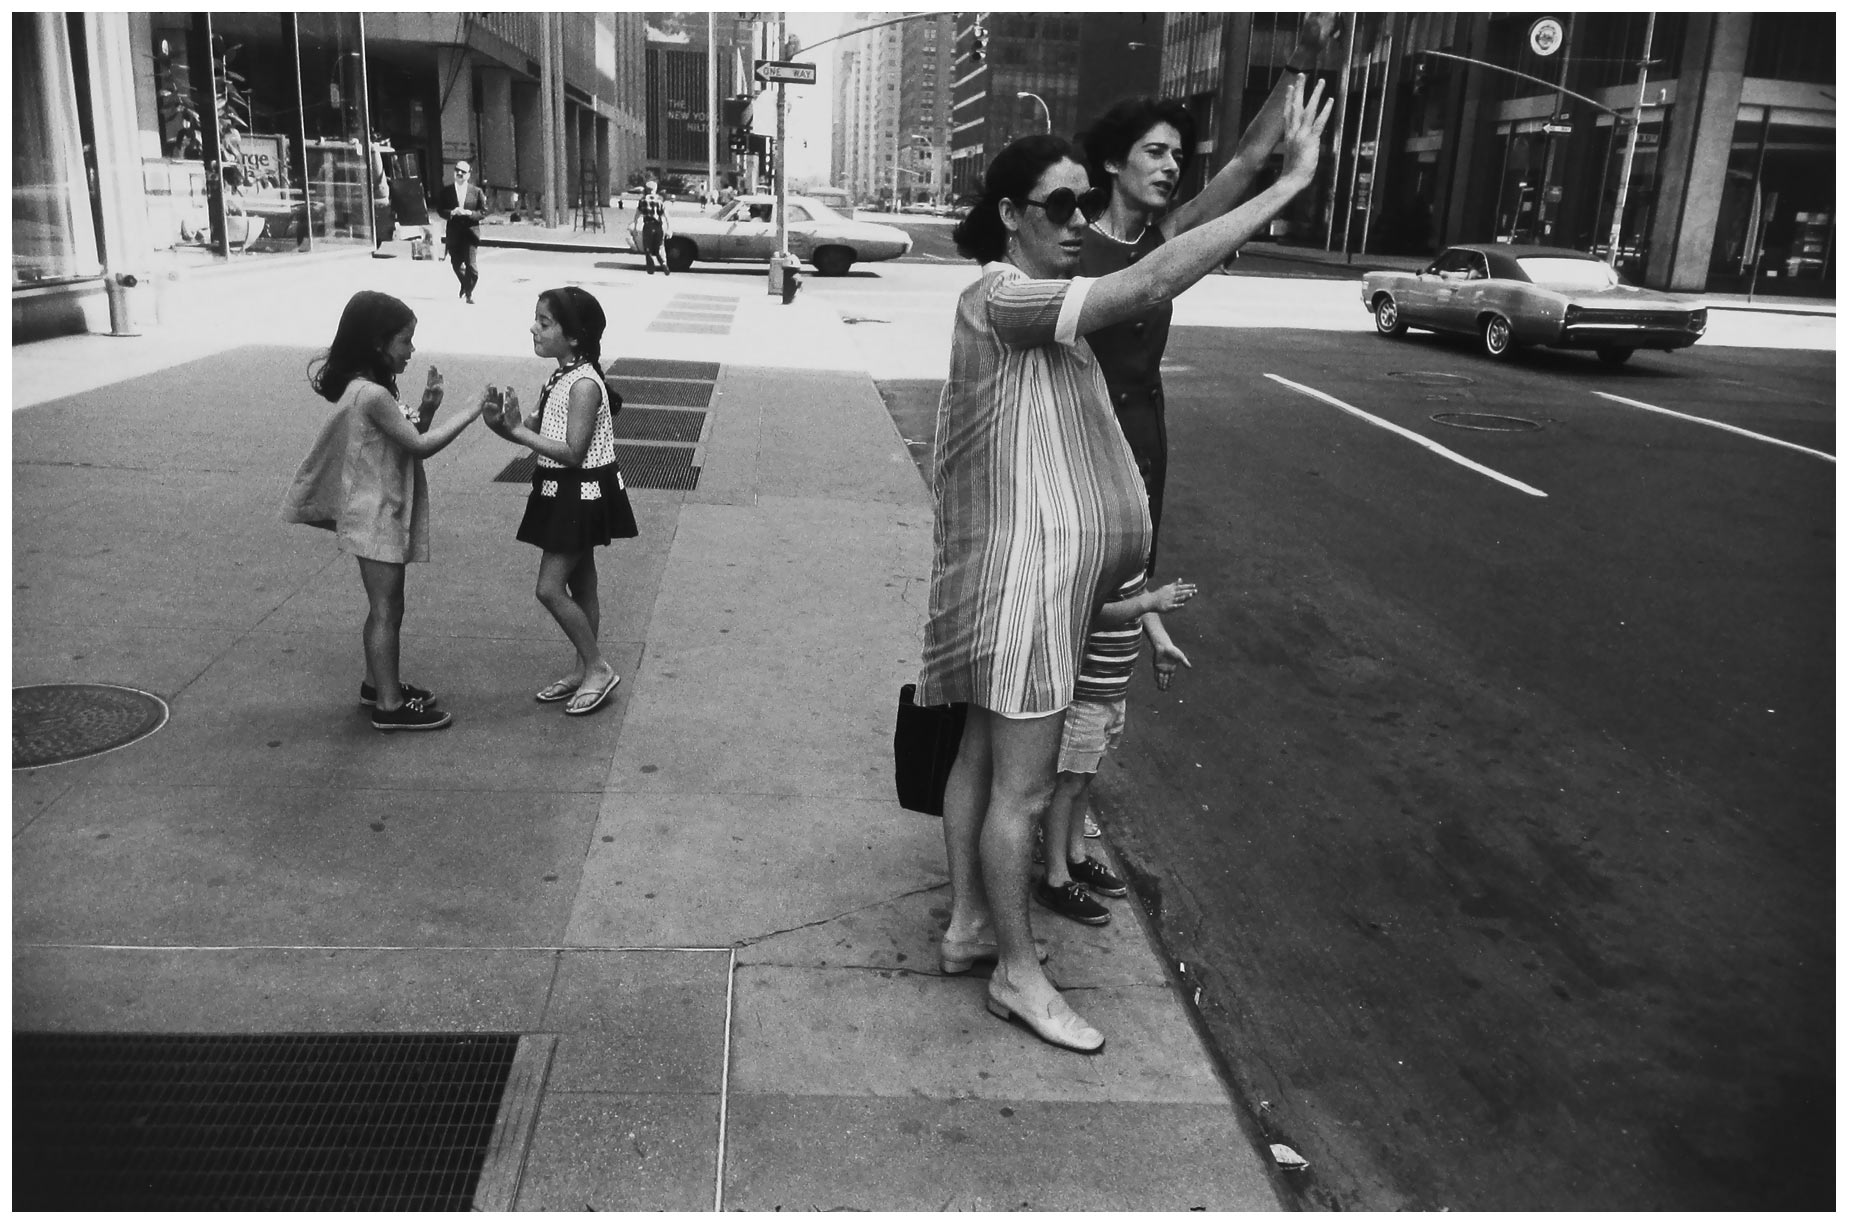 garry-winogrand-new-york-city-new-york-1969